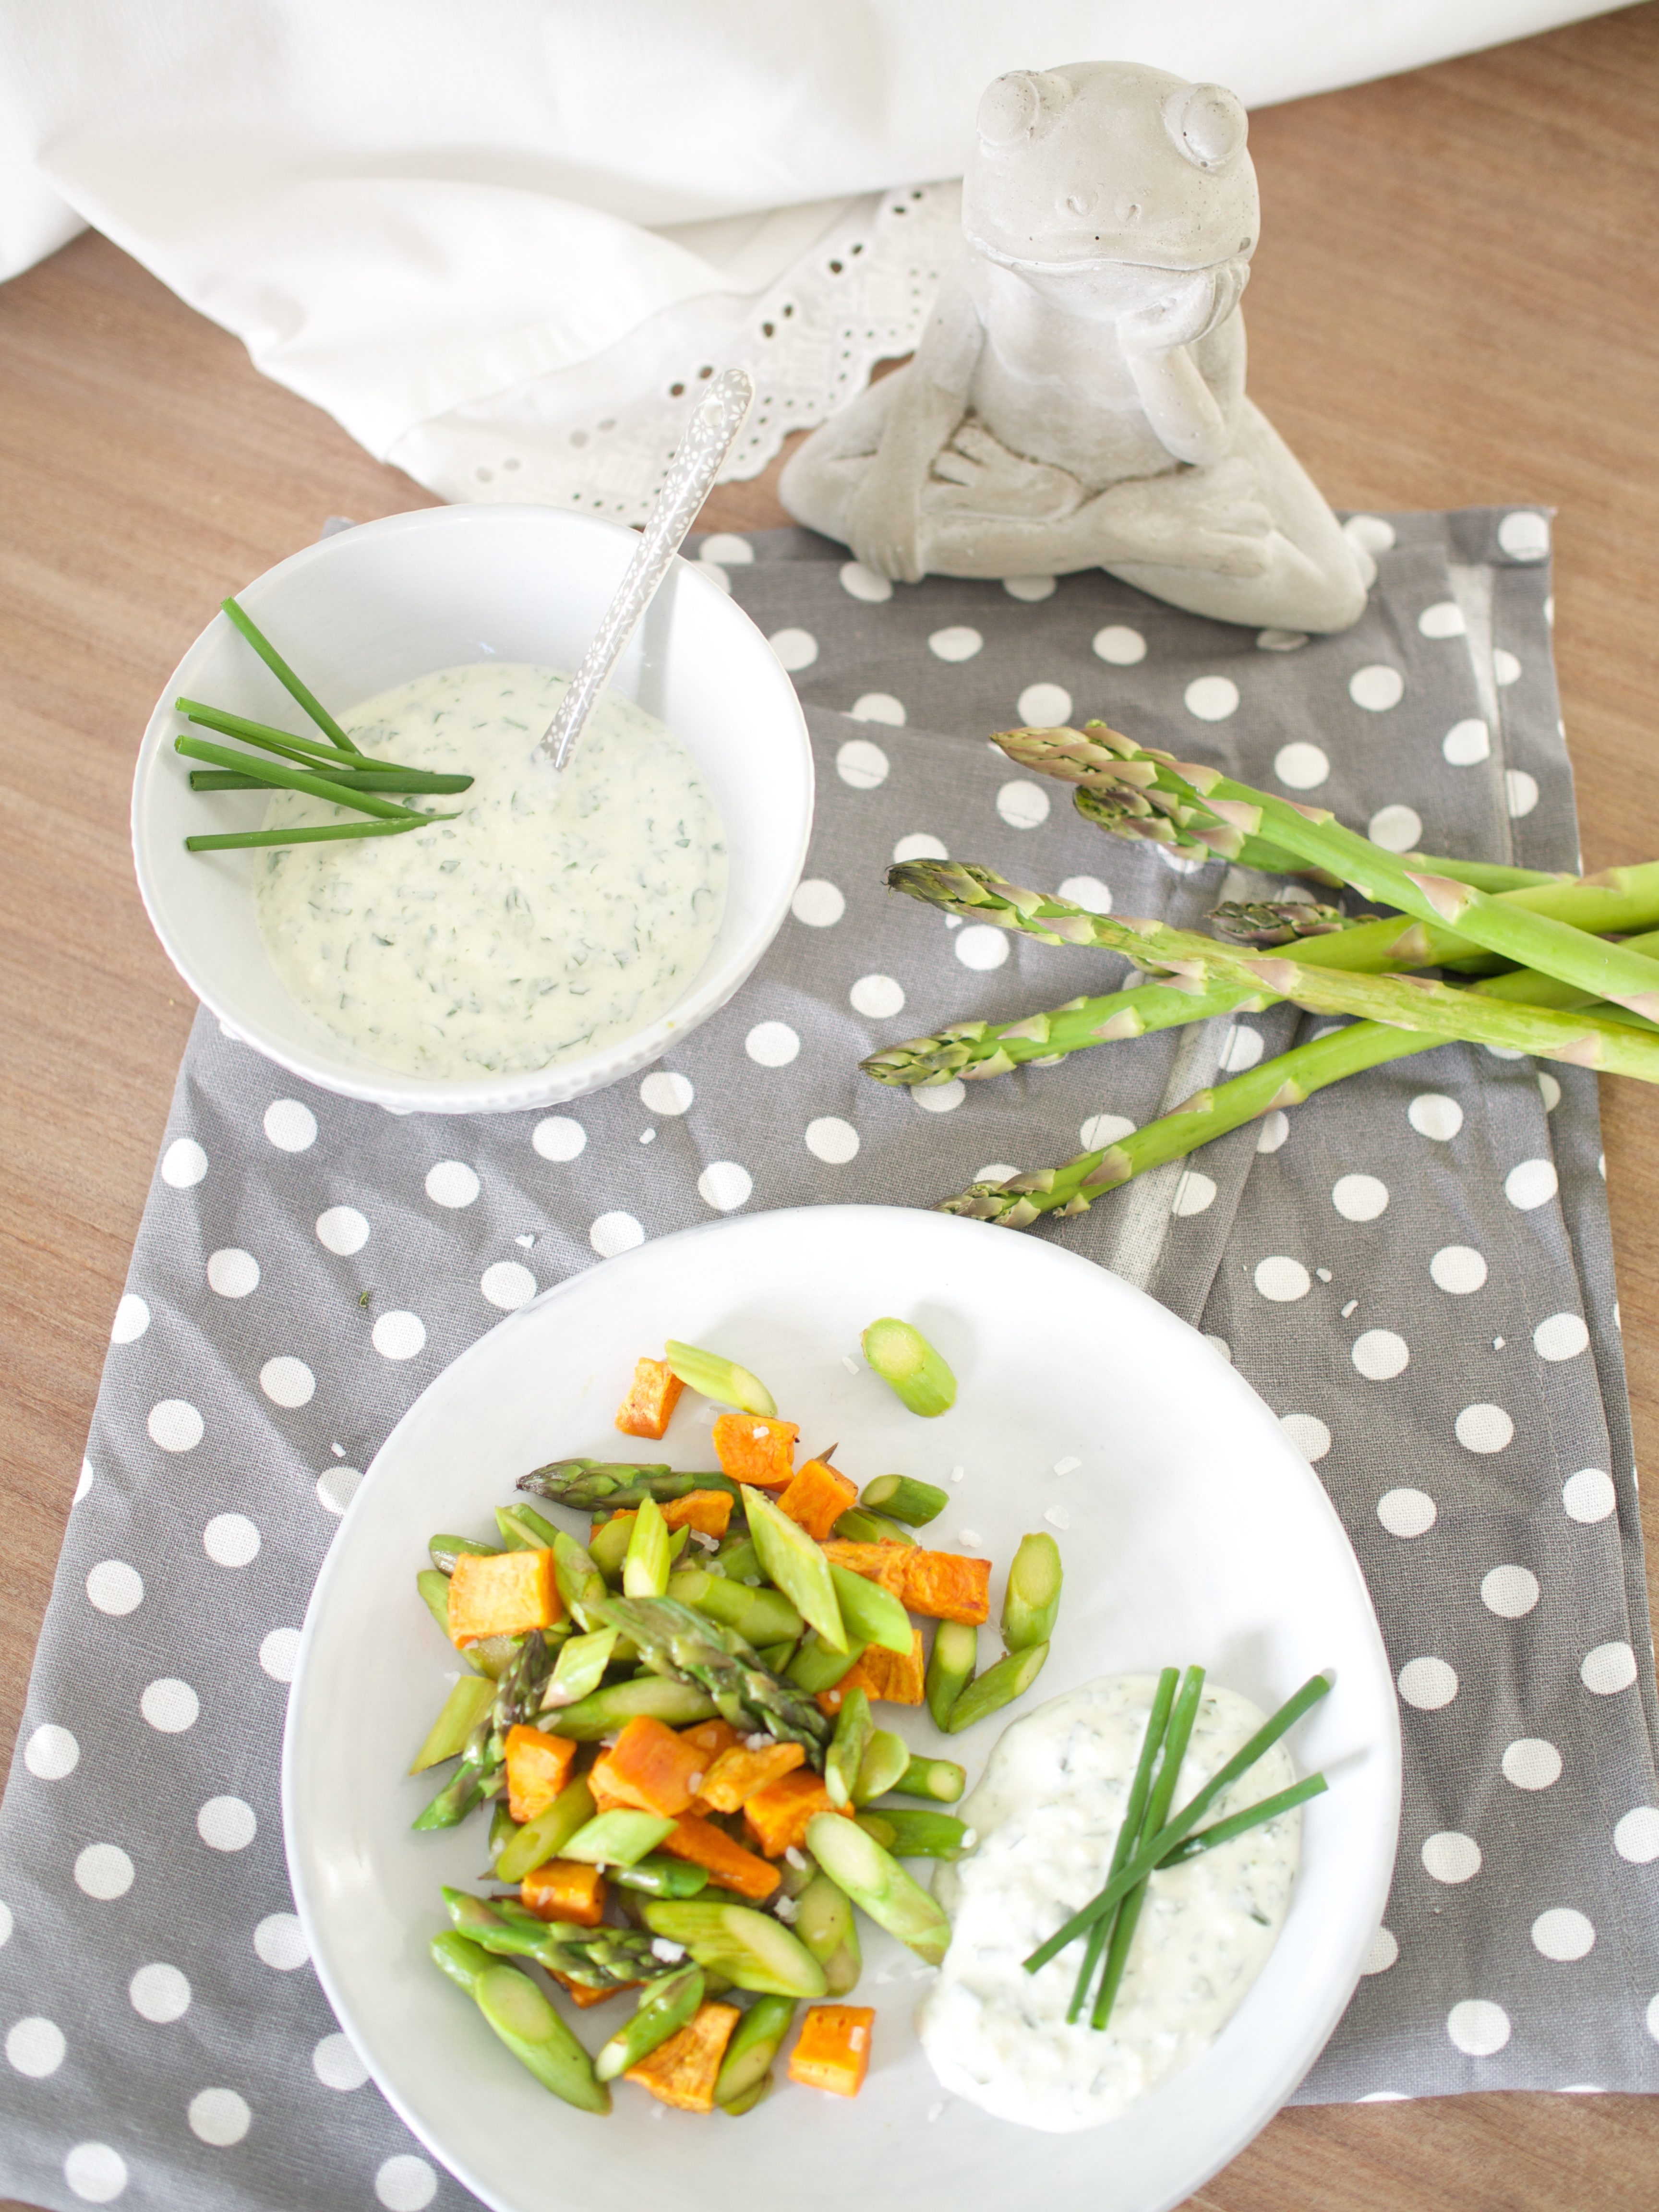 Schnelle, gesunde Rezepte für jeden Tag - grüner Spargel mit Süsskartoffeln und Kräuterquark!